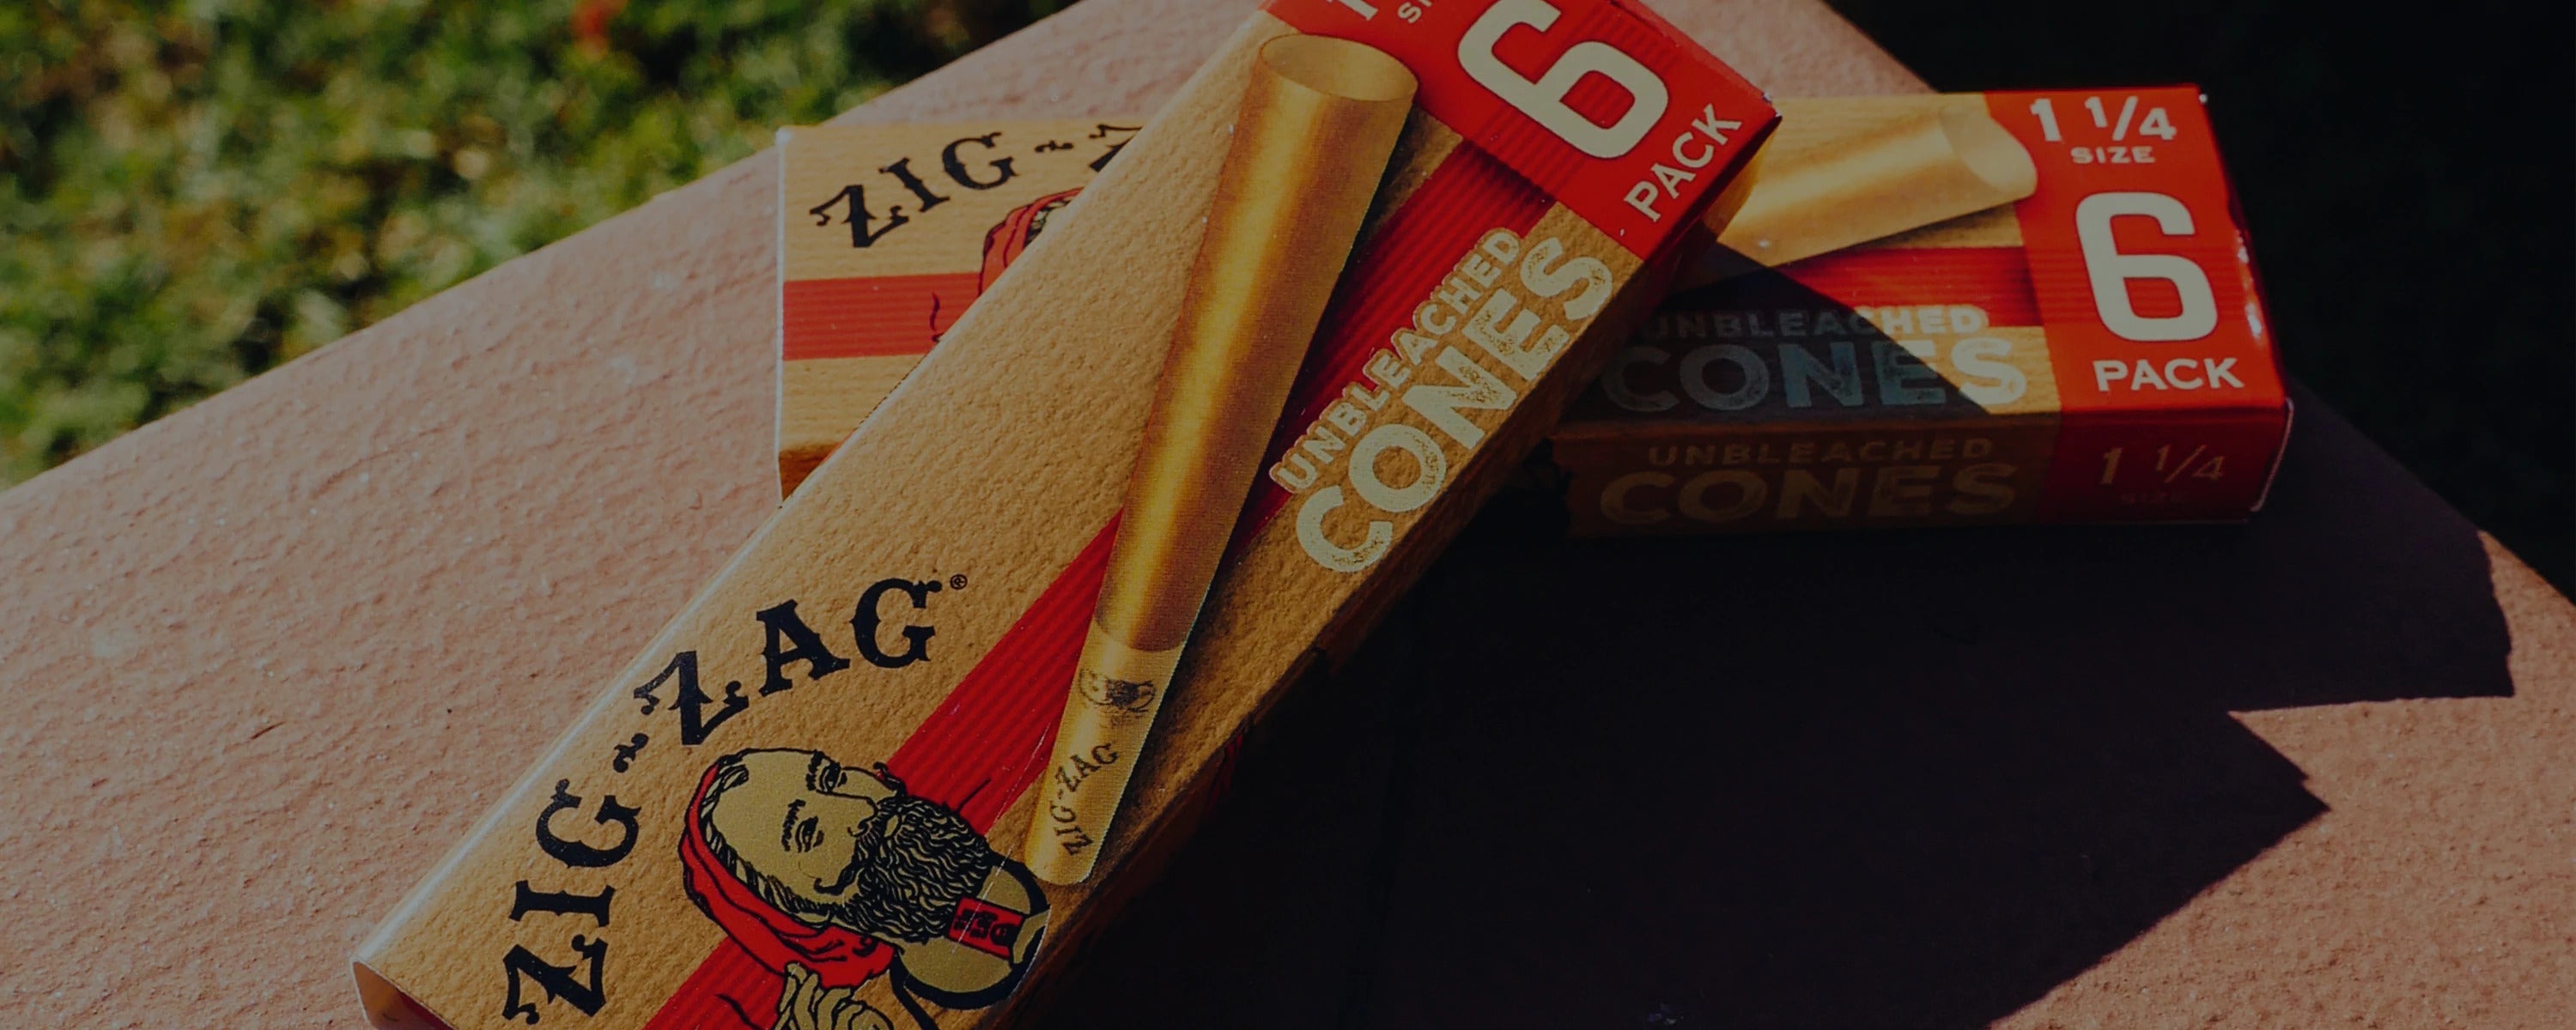 Zig-Zag Rolling Papers & Cones